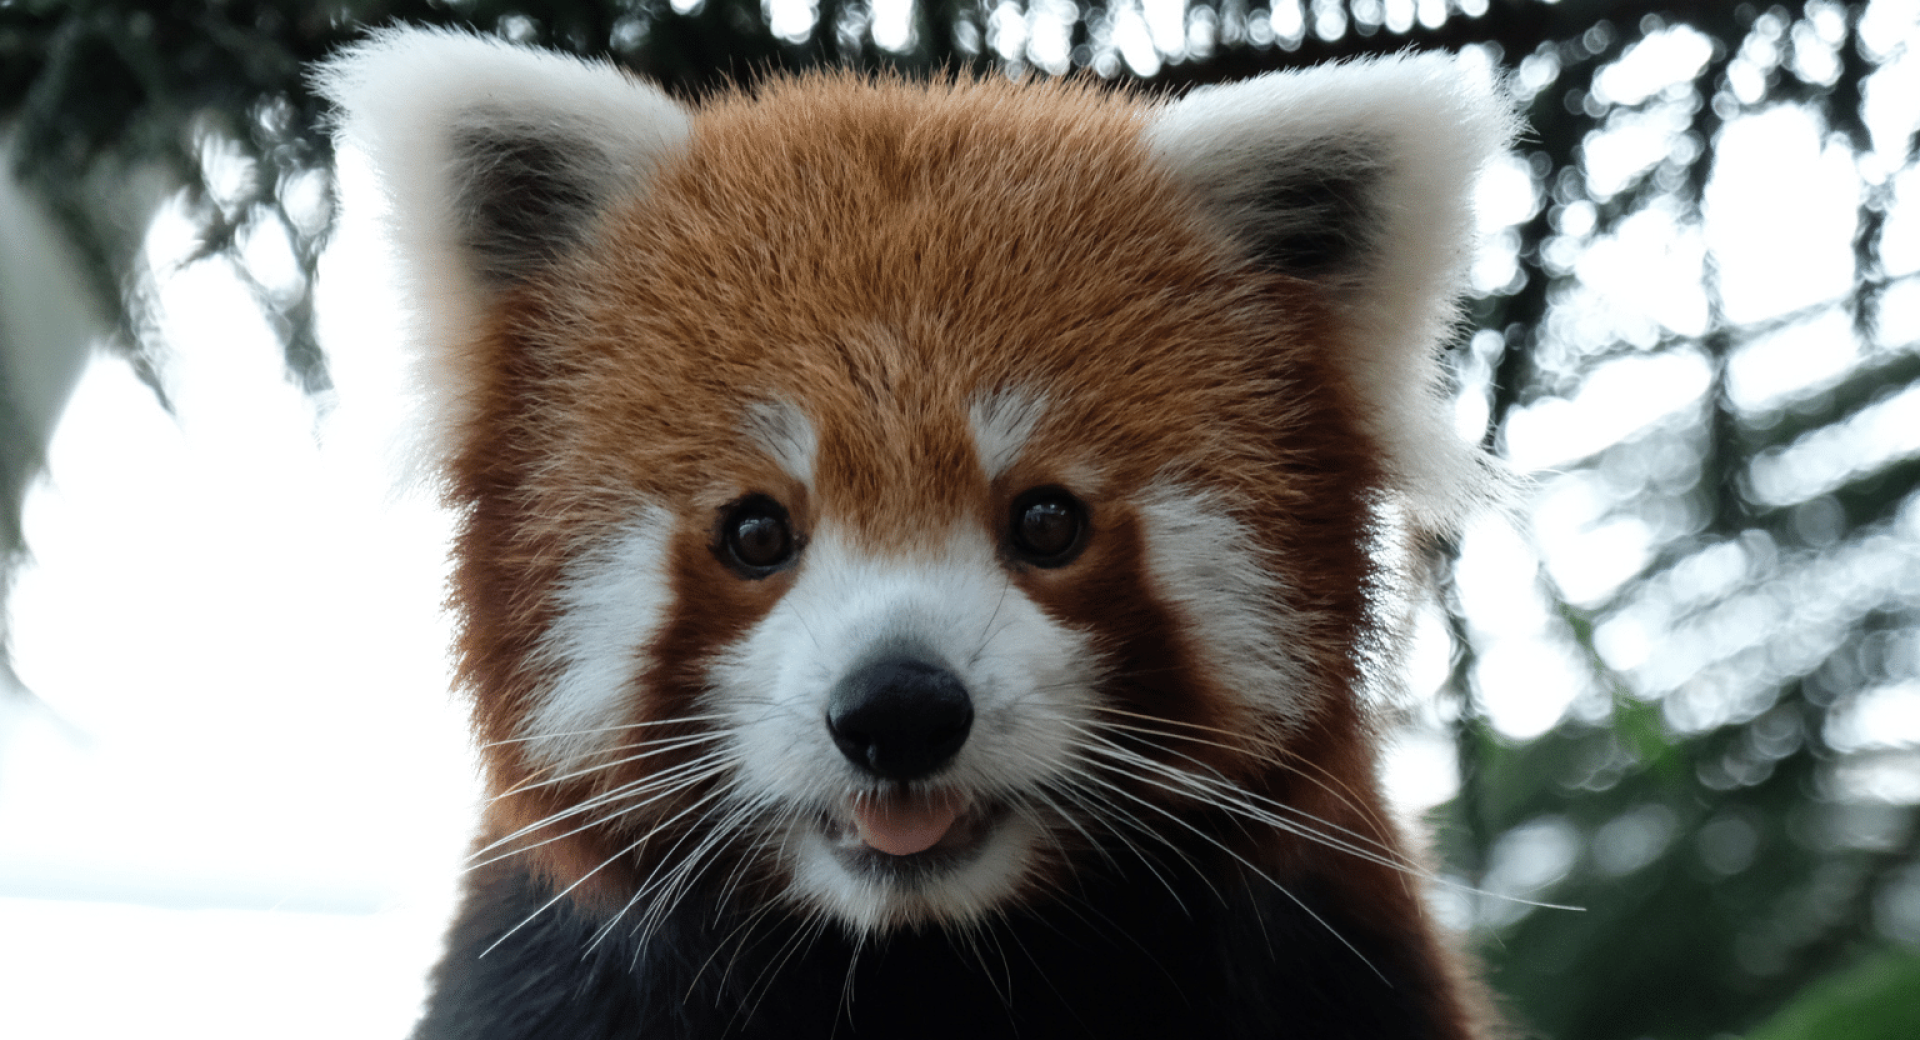 A 'Sanctuary' for Red Pandas